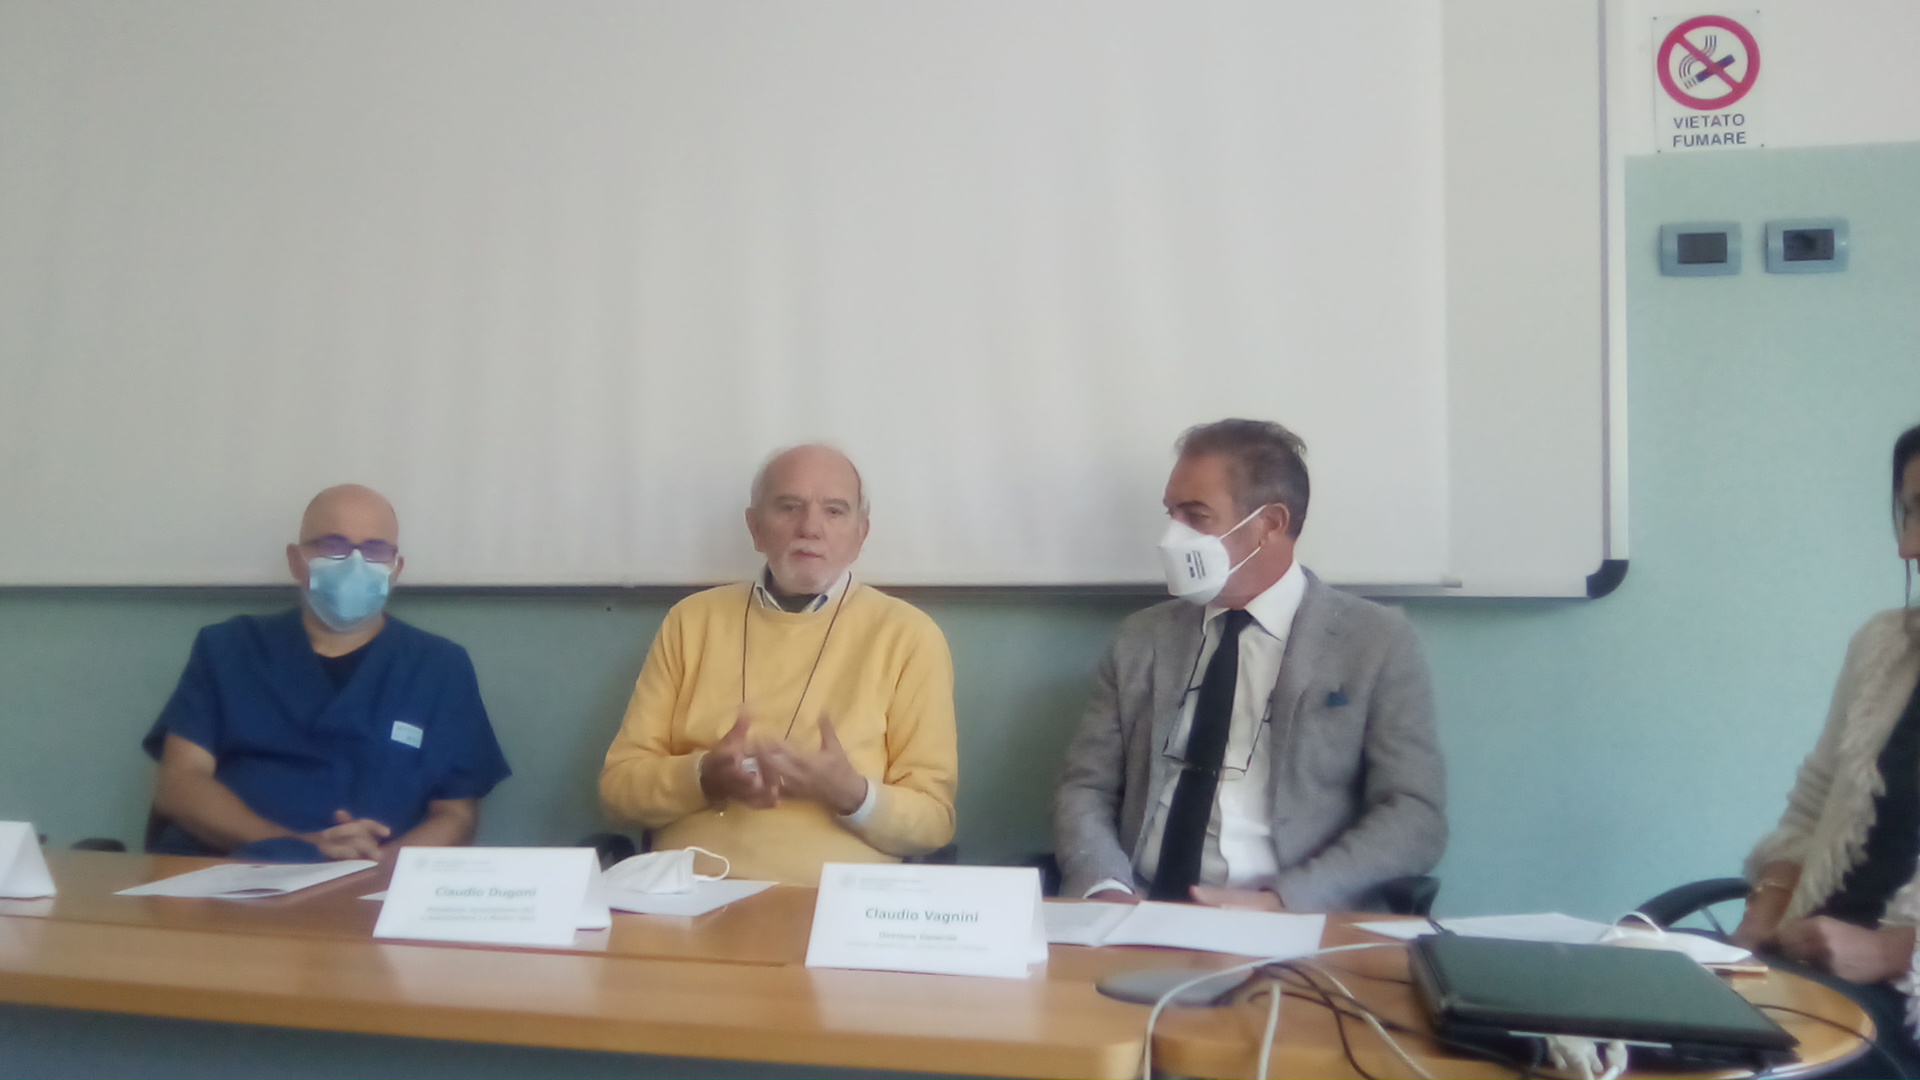  prevenzione dei tumori della testa e del collo: Modena aderisce alla campagna europea (video)